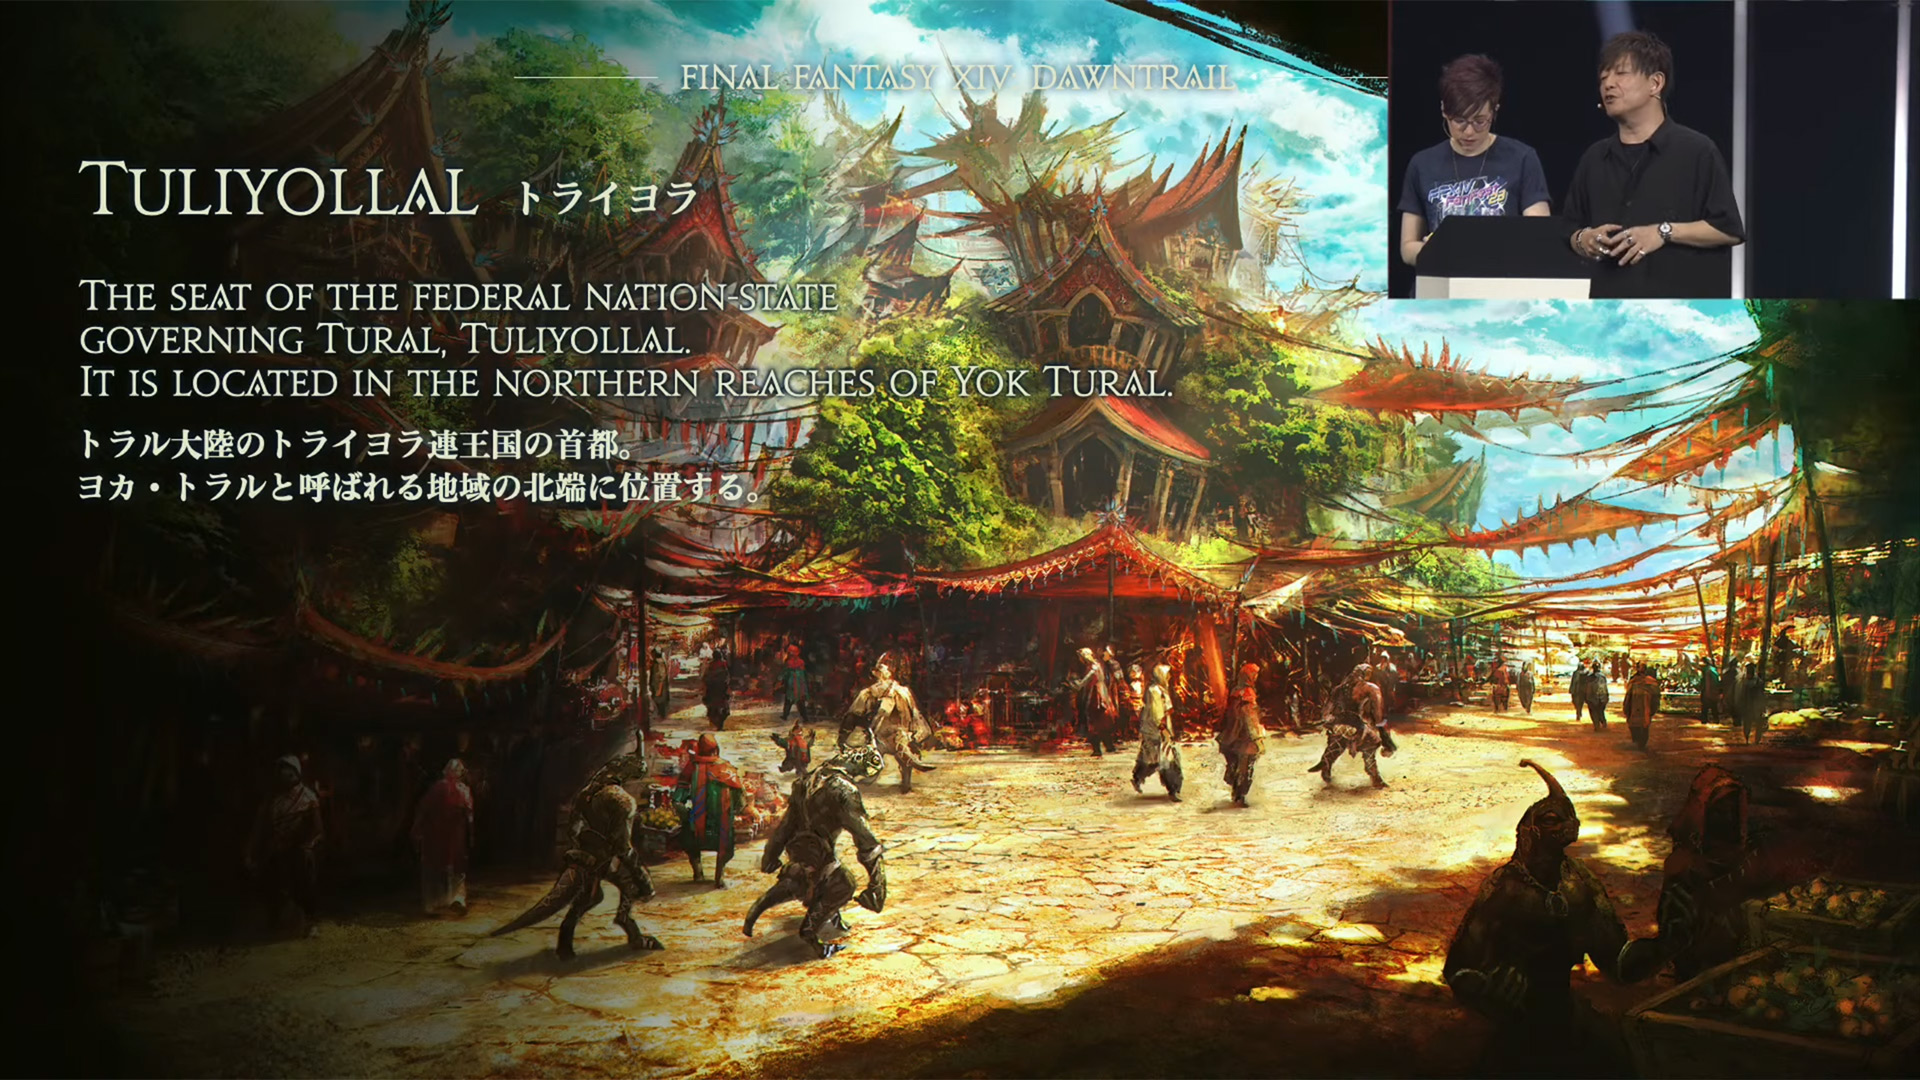 Final Fantasy XIV: Dawntrail's Tuliyollal